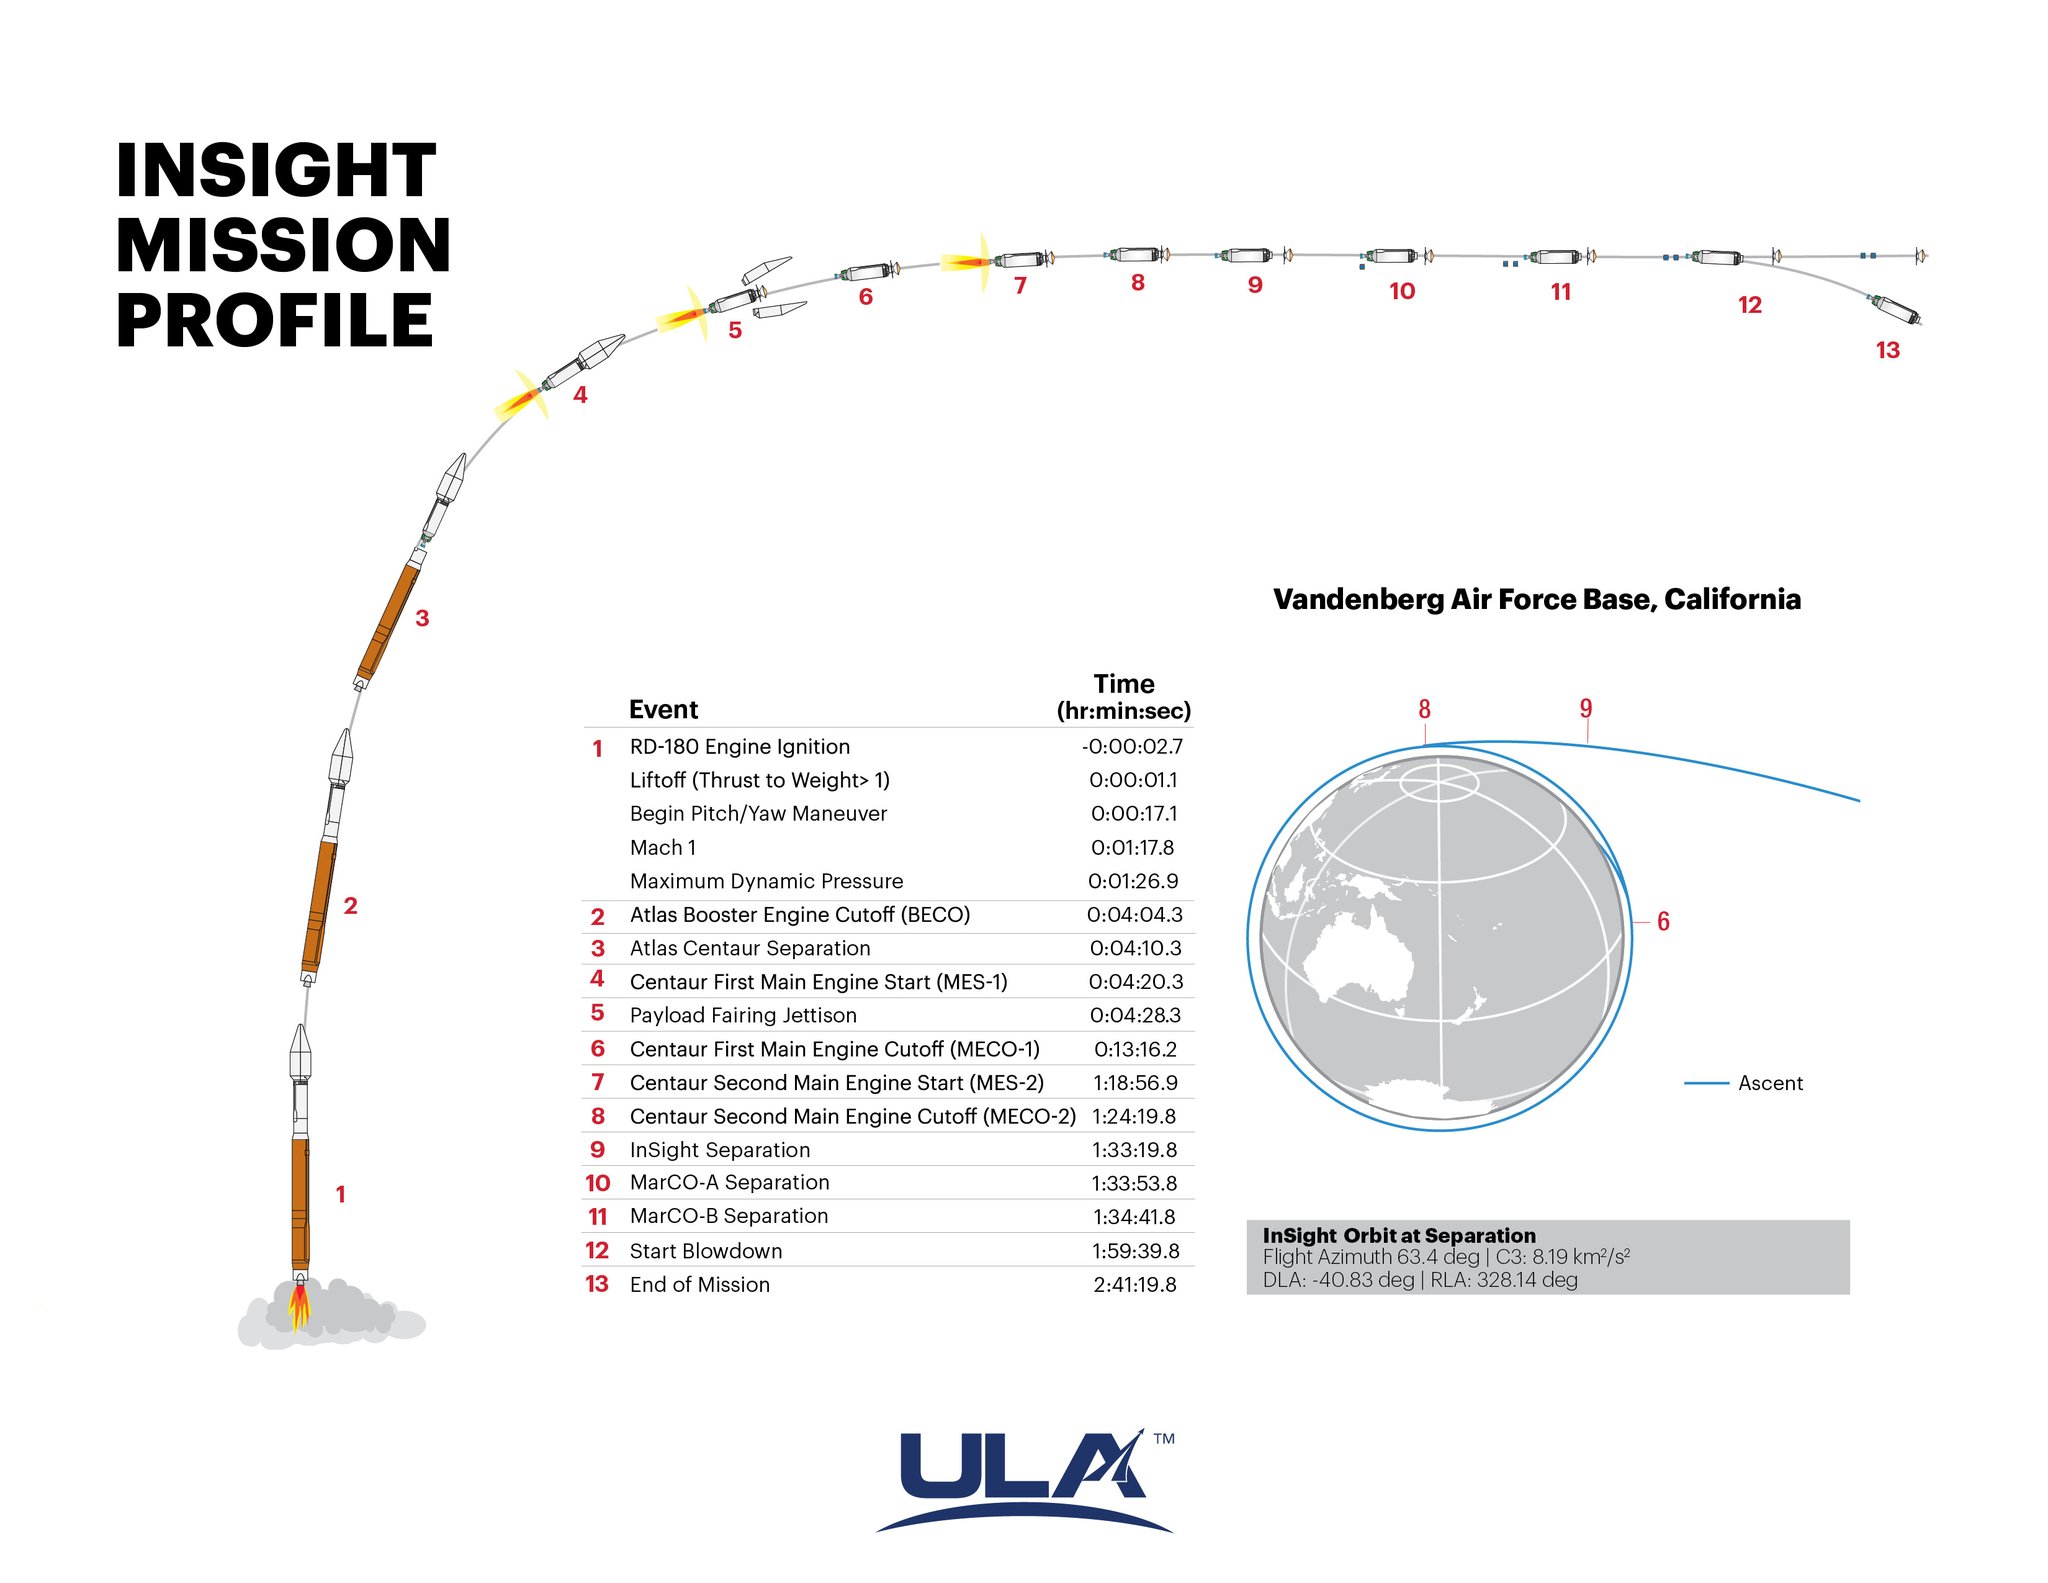 È decollata la missione InSight della NASA che ha come obiettivo penetrare nel suolo marziano grazie all'utilizzo di strumenti scientifici senza precedenti.